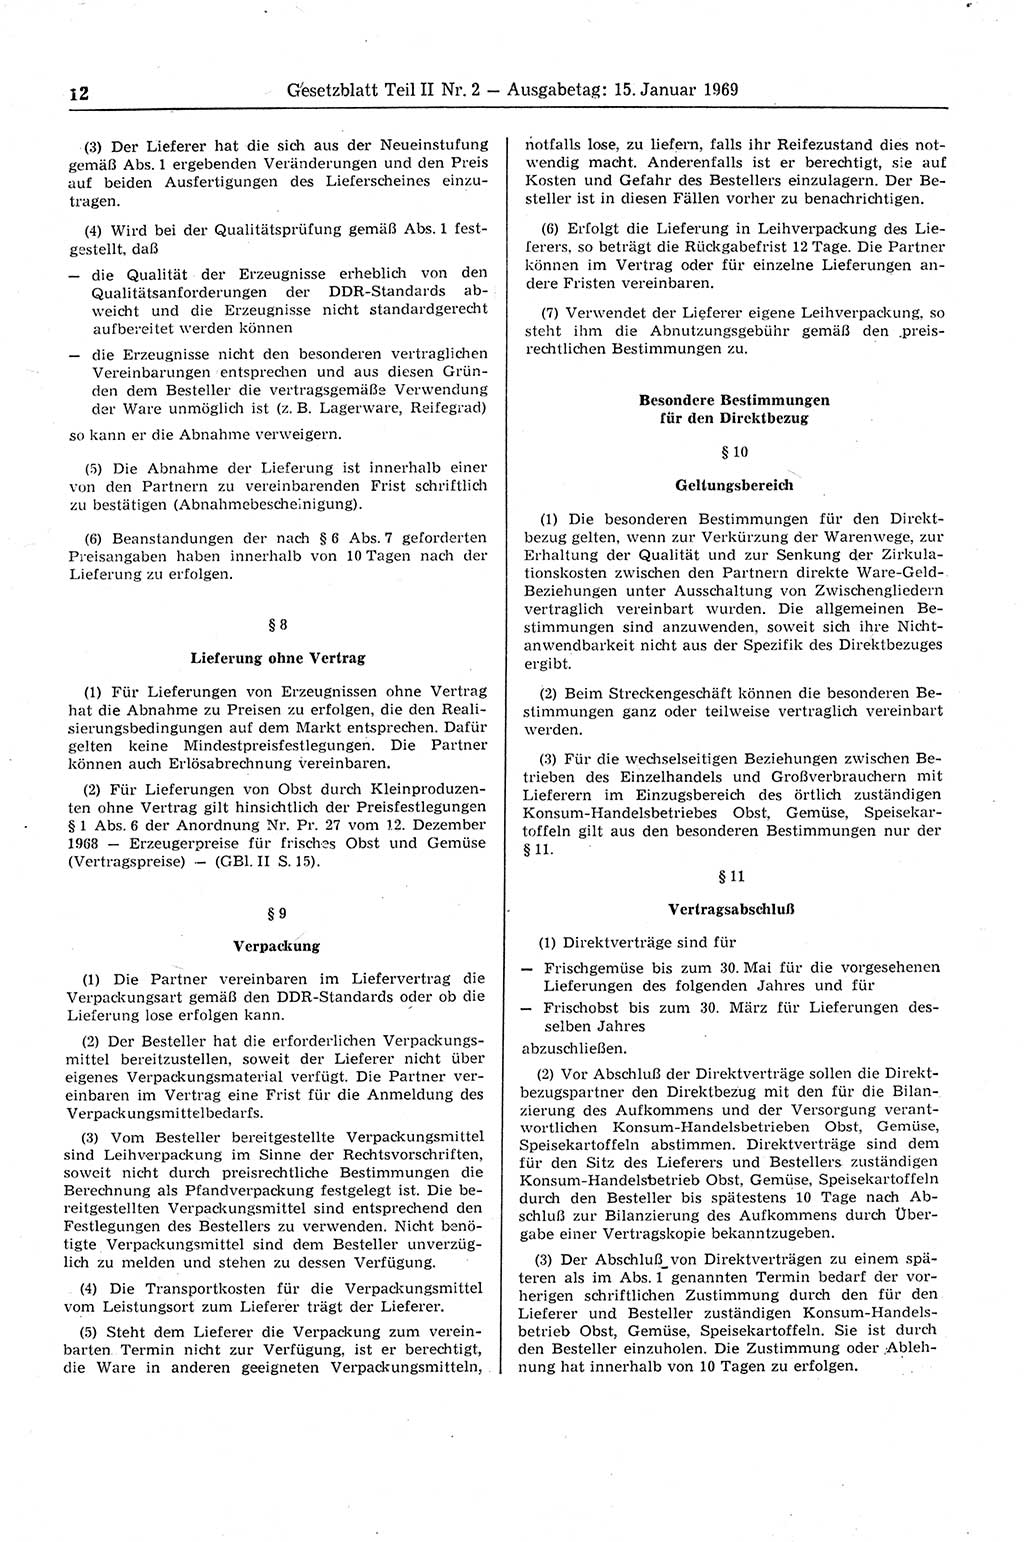 Gesetzblatt (GBl.) der Deutschen Demokratischen Republik (DDR) Teil ⅠⅠ 1969, Seite 12 (GBl. DDR ⅠⅠ 1969, S. 12)